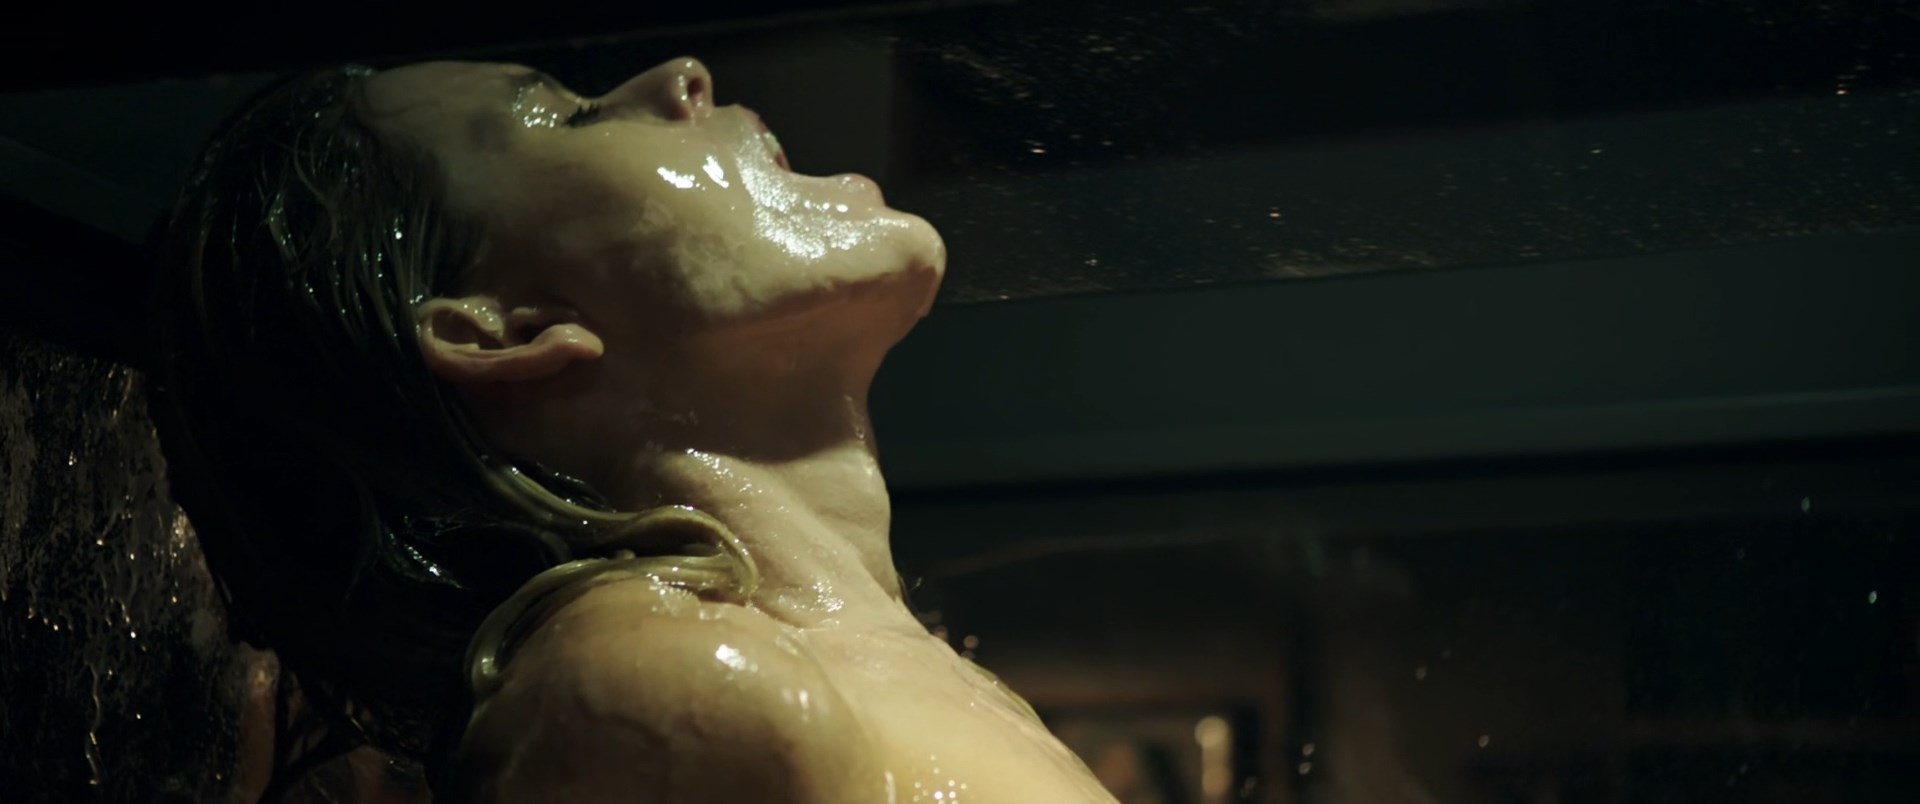 Nude Video Celebs Alice Eve Nude Replicas 2018